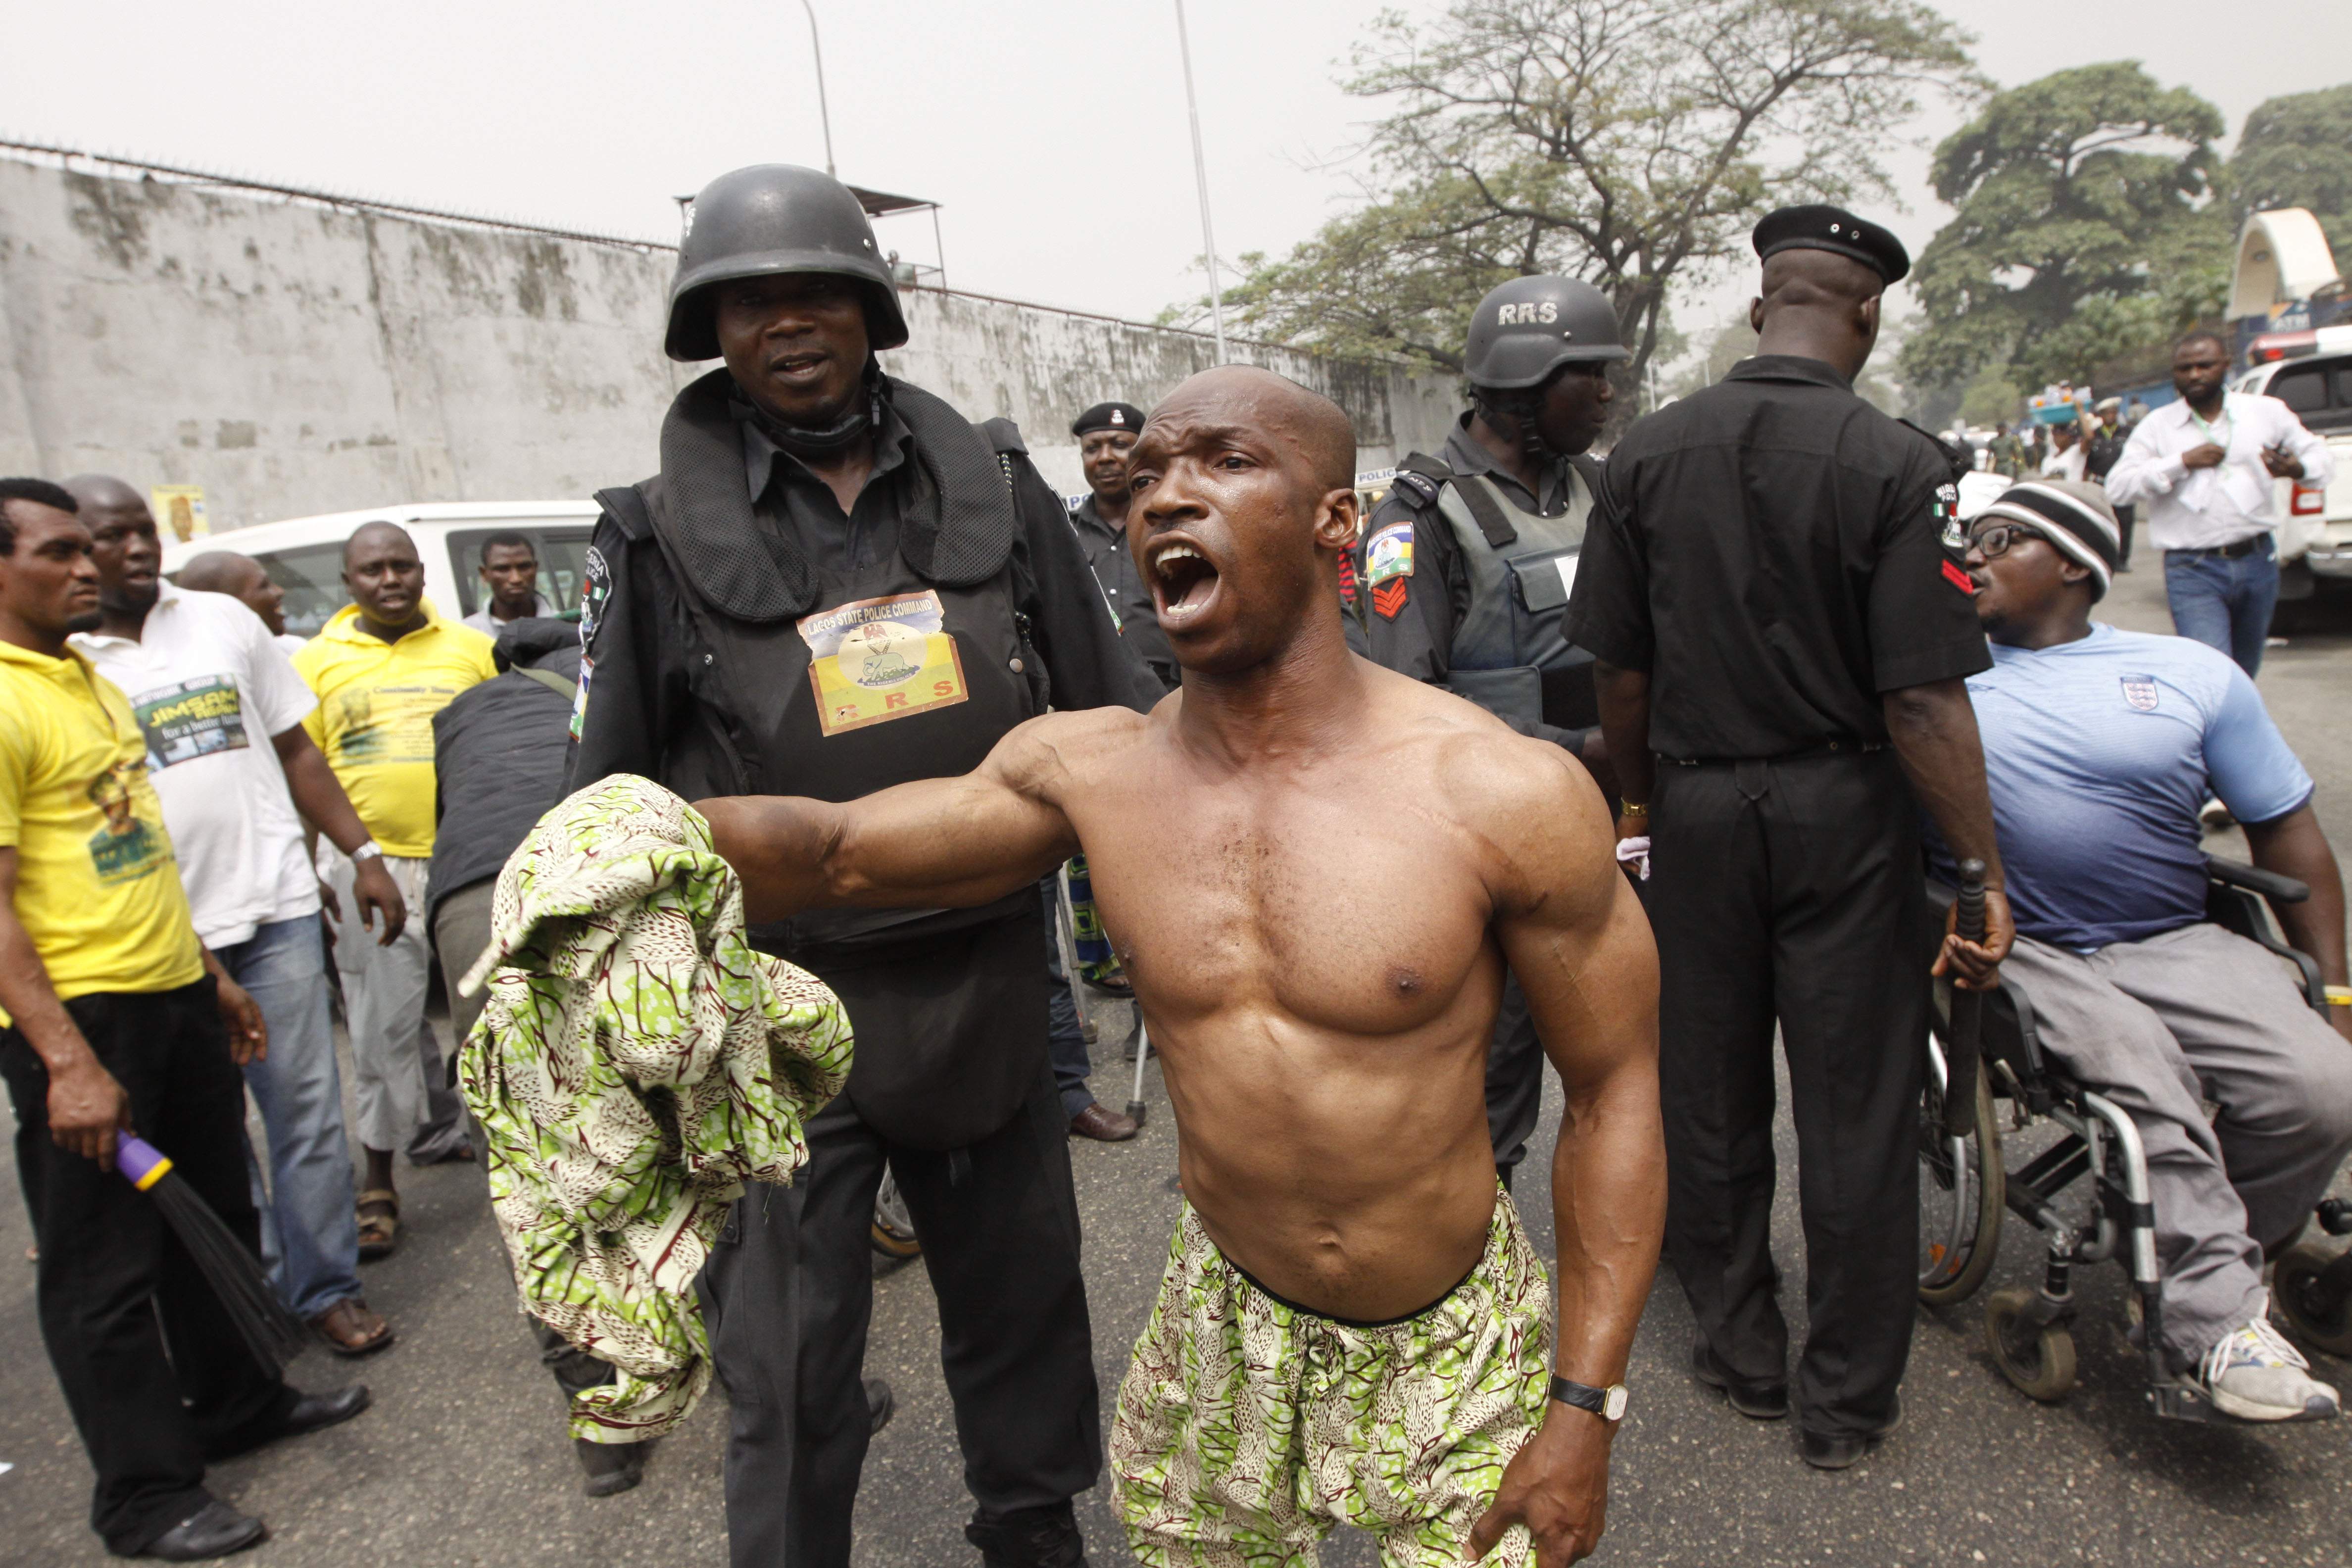 Nigeria, Panik, Olycka, Brott och straff